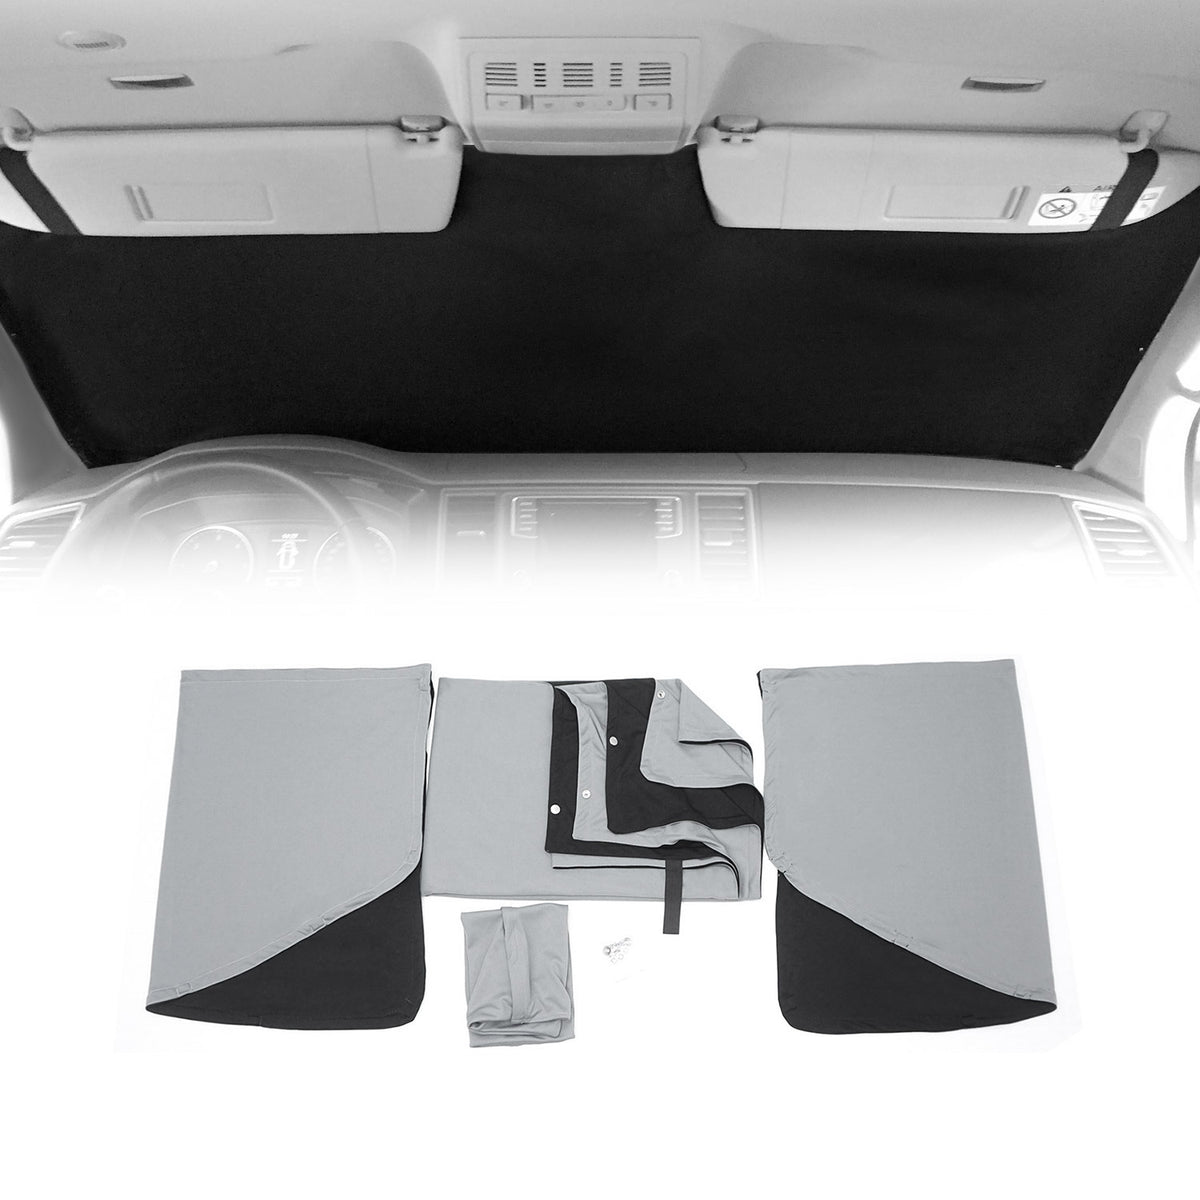 Rideaux pare-soleil magnétique pour VW Caddy 2003-2015 Gris-Noir Tissu